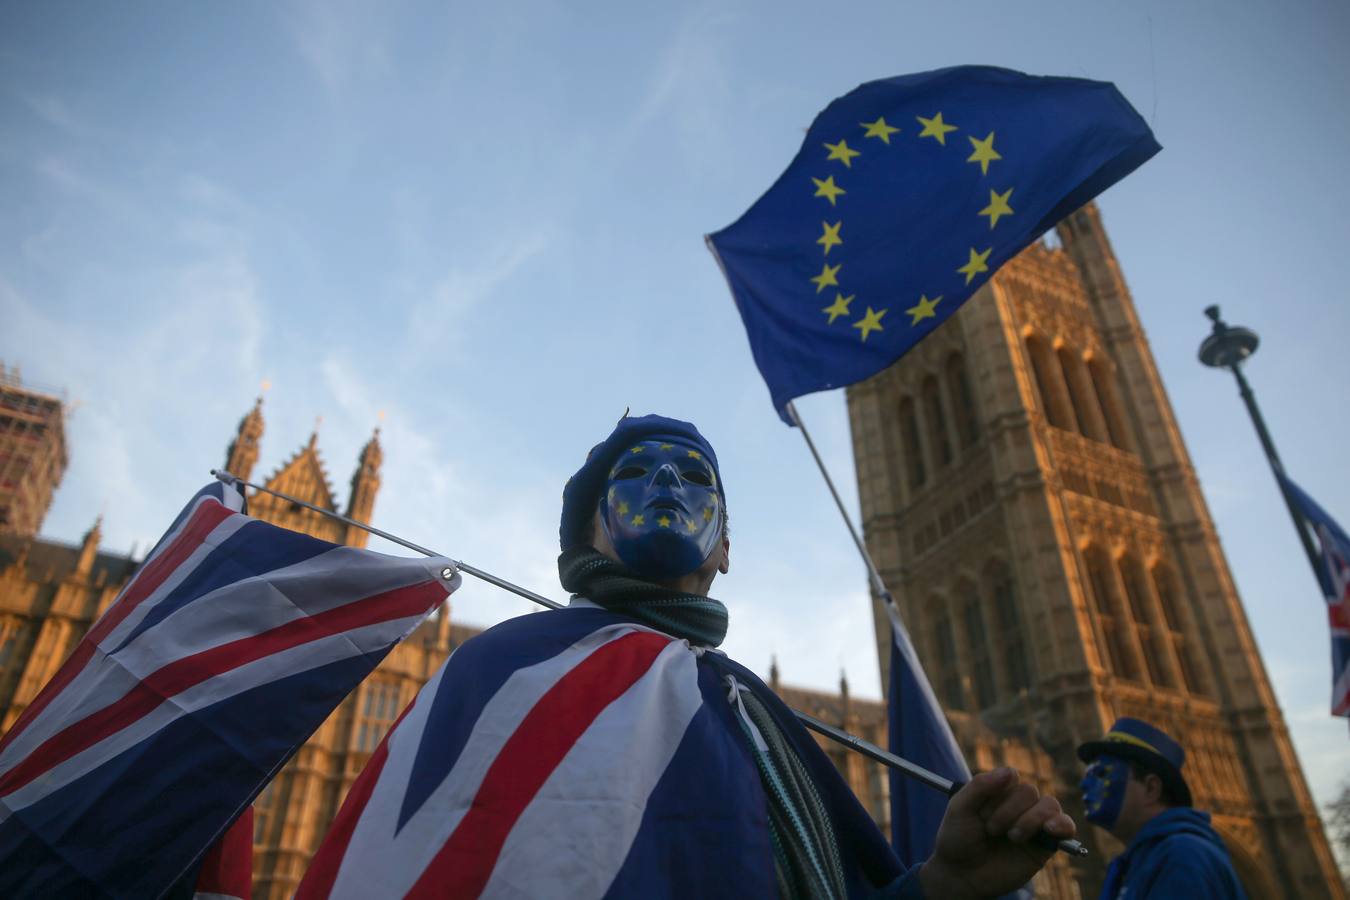 Los manifestantes pro-Unión Europea, (UE) y anti-Brexit usan máscaras con la bandera de la UE, ya que sostienen una bandera de la Unión fuera del Parlamento en el centro de Londres el 18 de diciembre de 2017. / AFP PHOTO / 